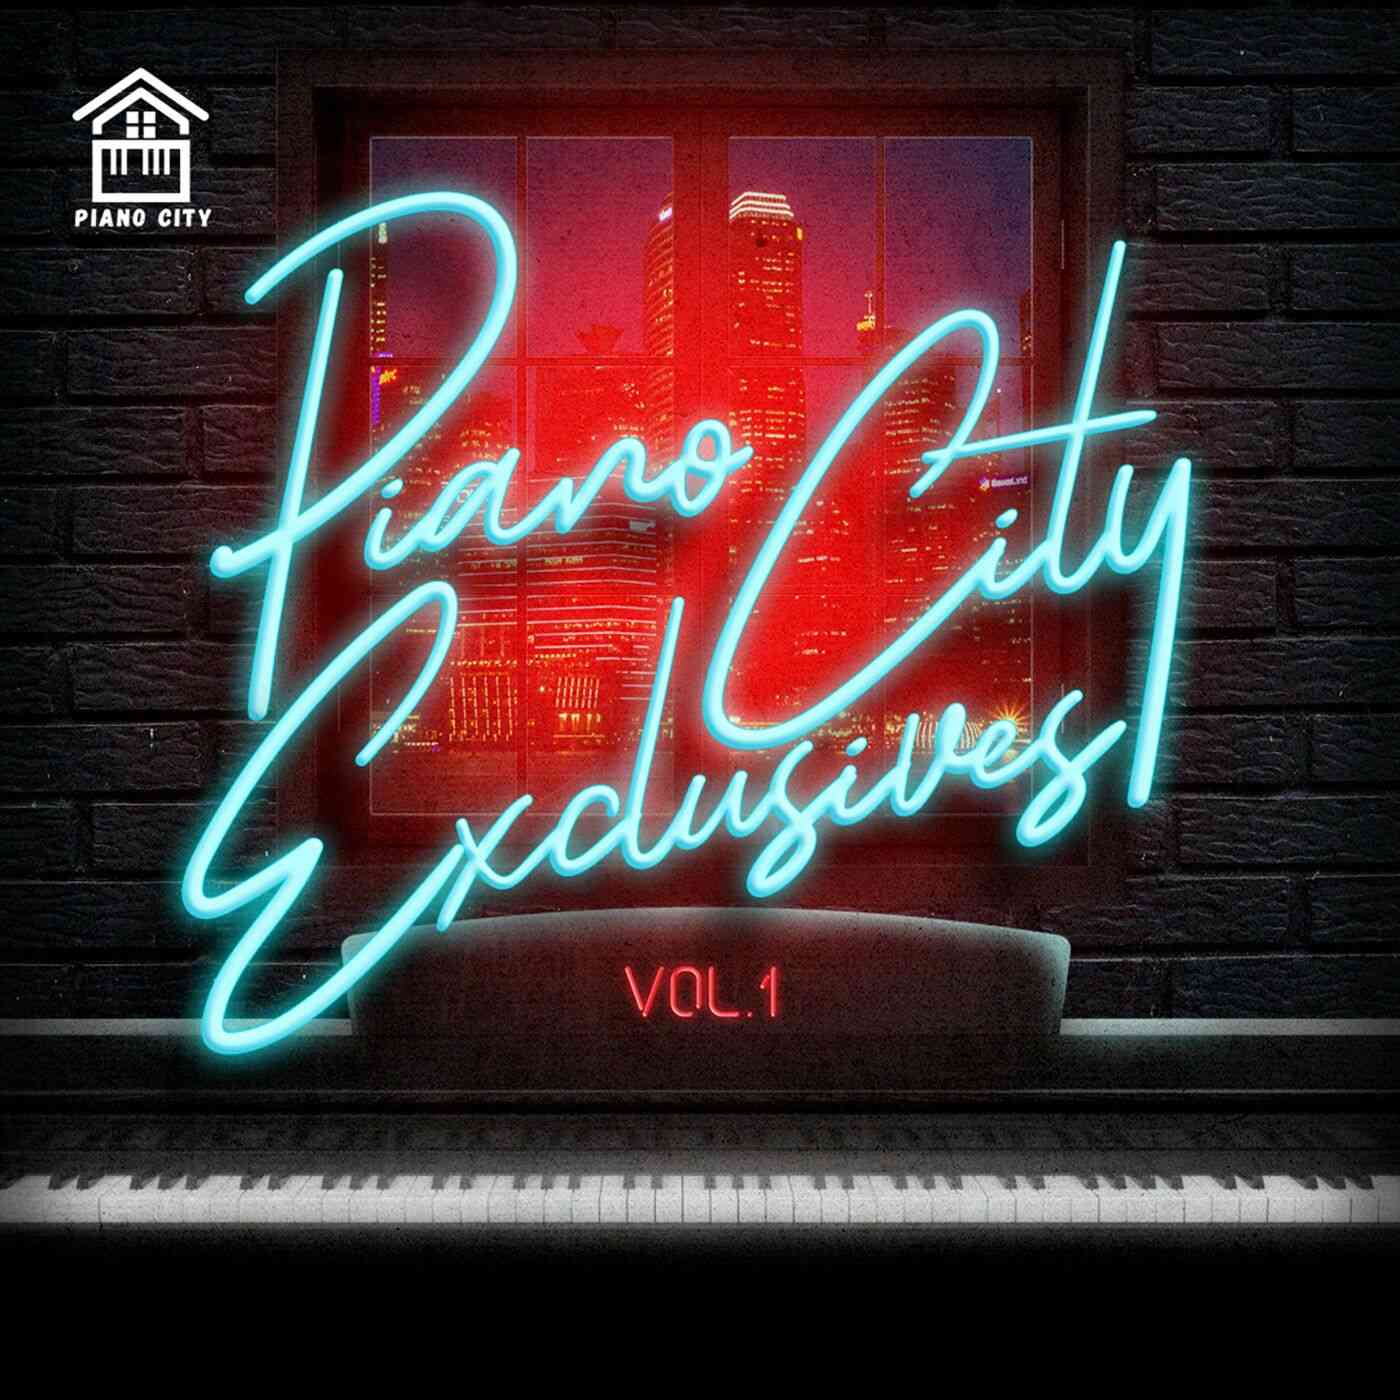 Piano City Exclusives Vol 1 by Major League DJz | Album